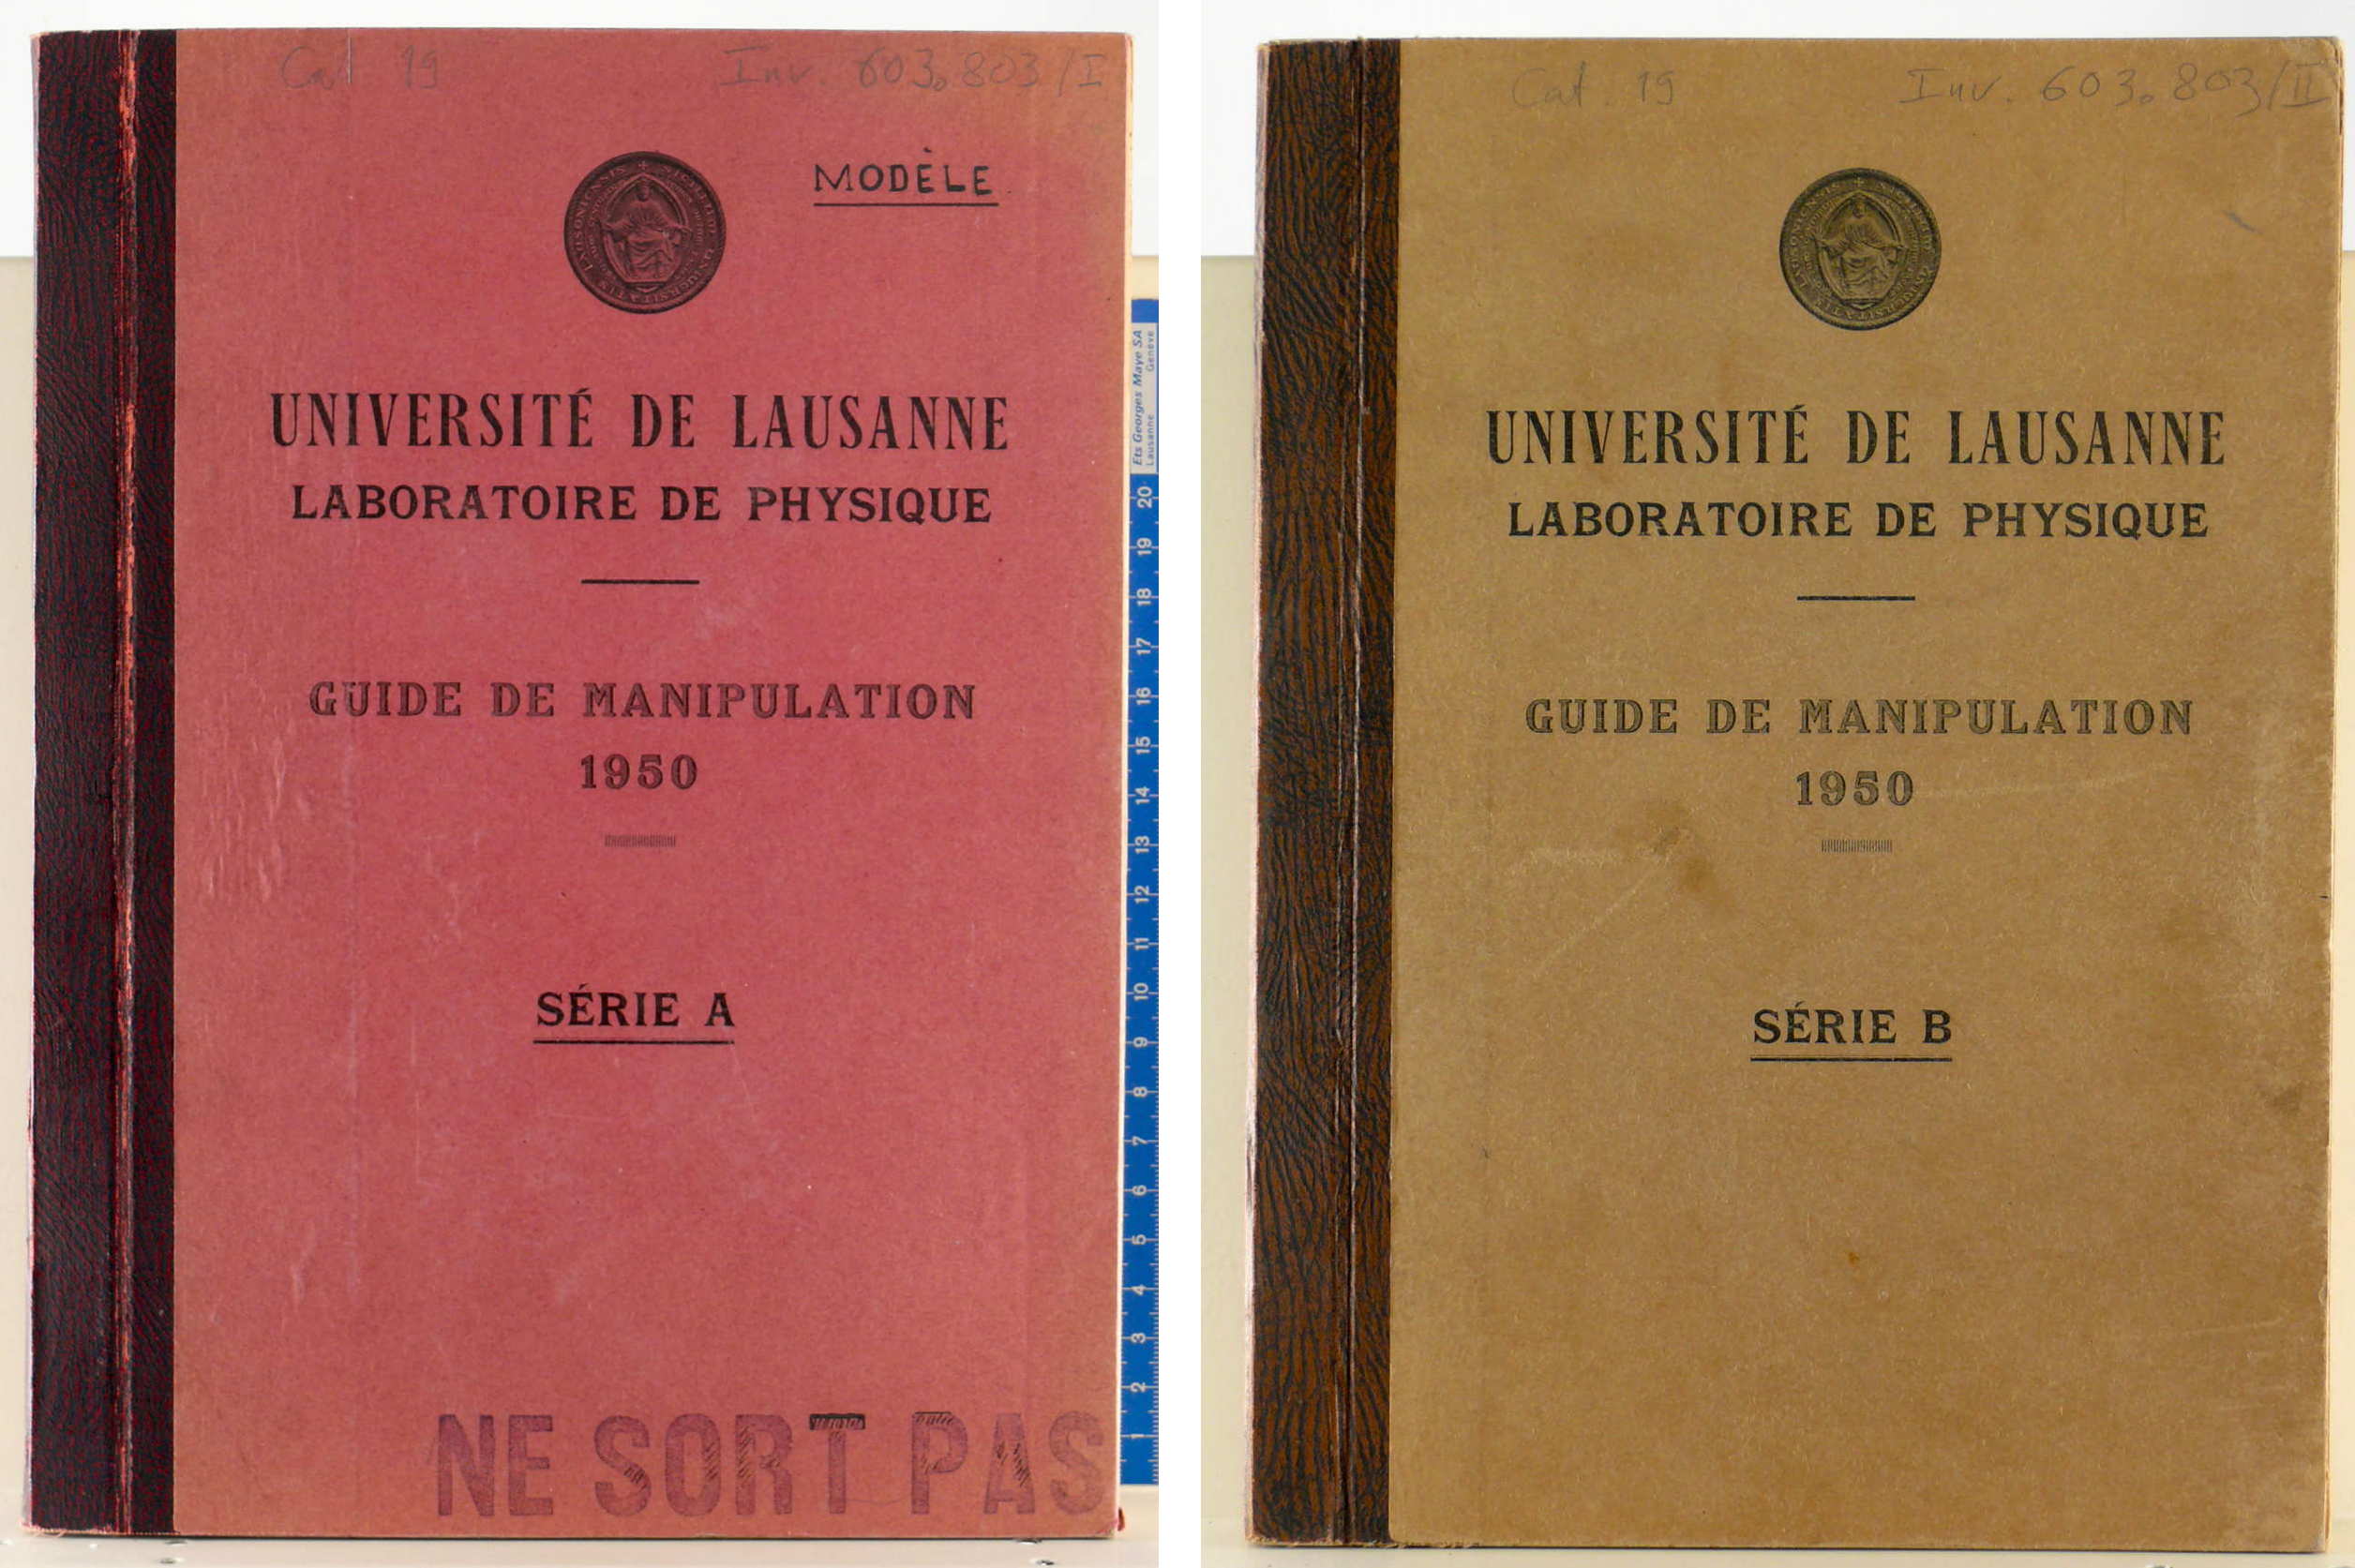 Guides de manipulation 1950 (Séries A et B)
Université de Lausanne, Laboratoire de physique